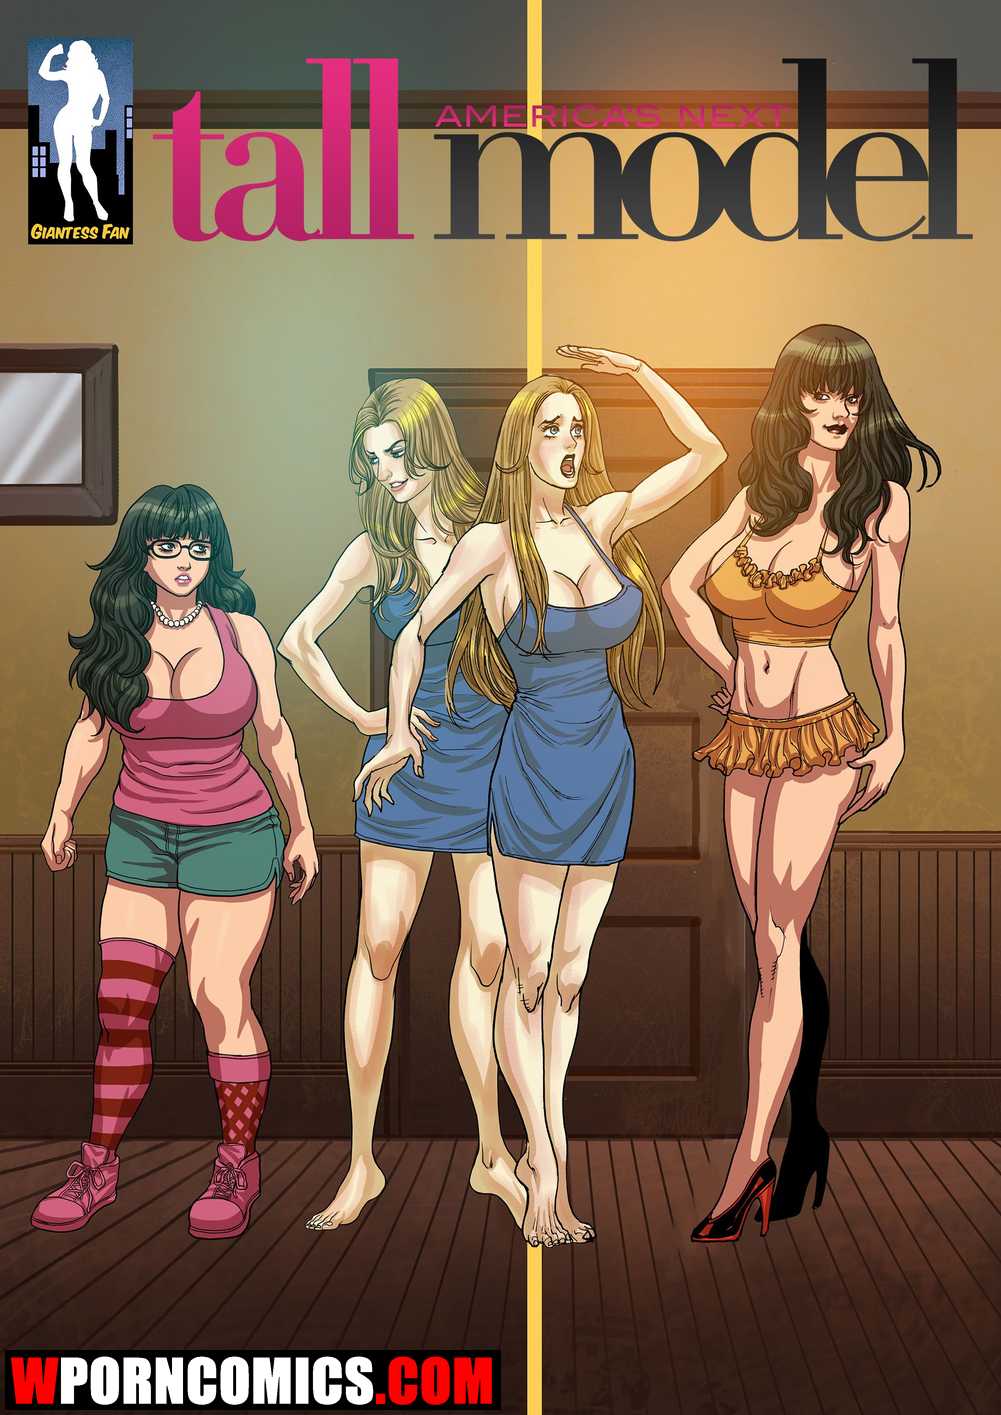 âœ…ï¸ Porn comic America Next Tall Model. Part 1. Sex comic hot brunette has |  Porn comics in English for adults only | sexkomix2.com